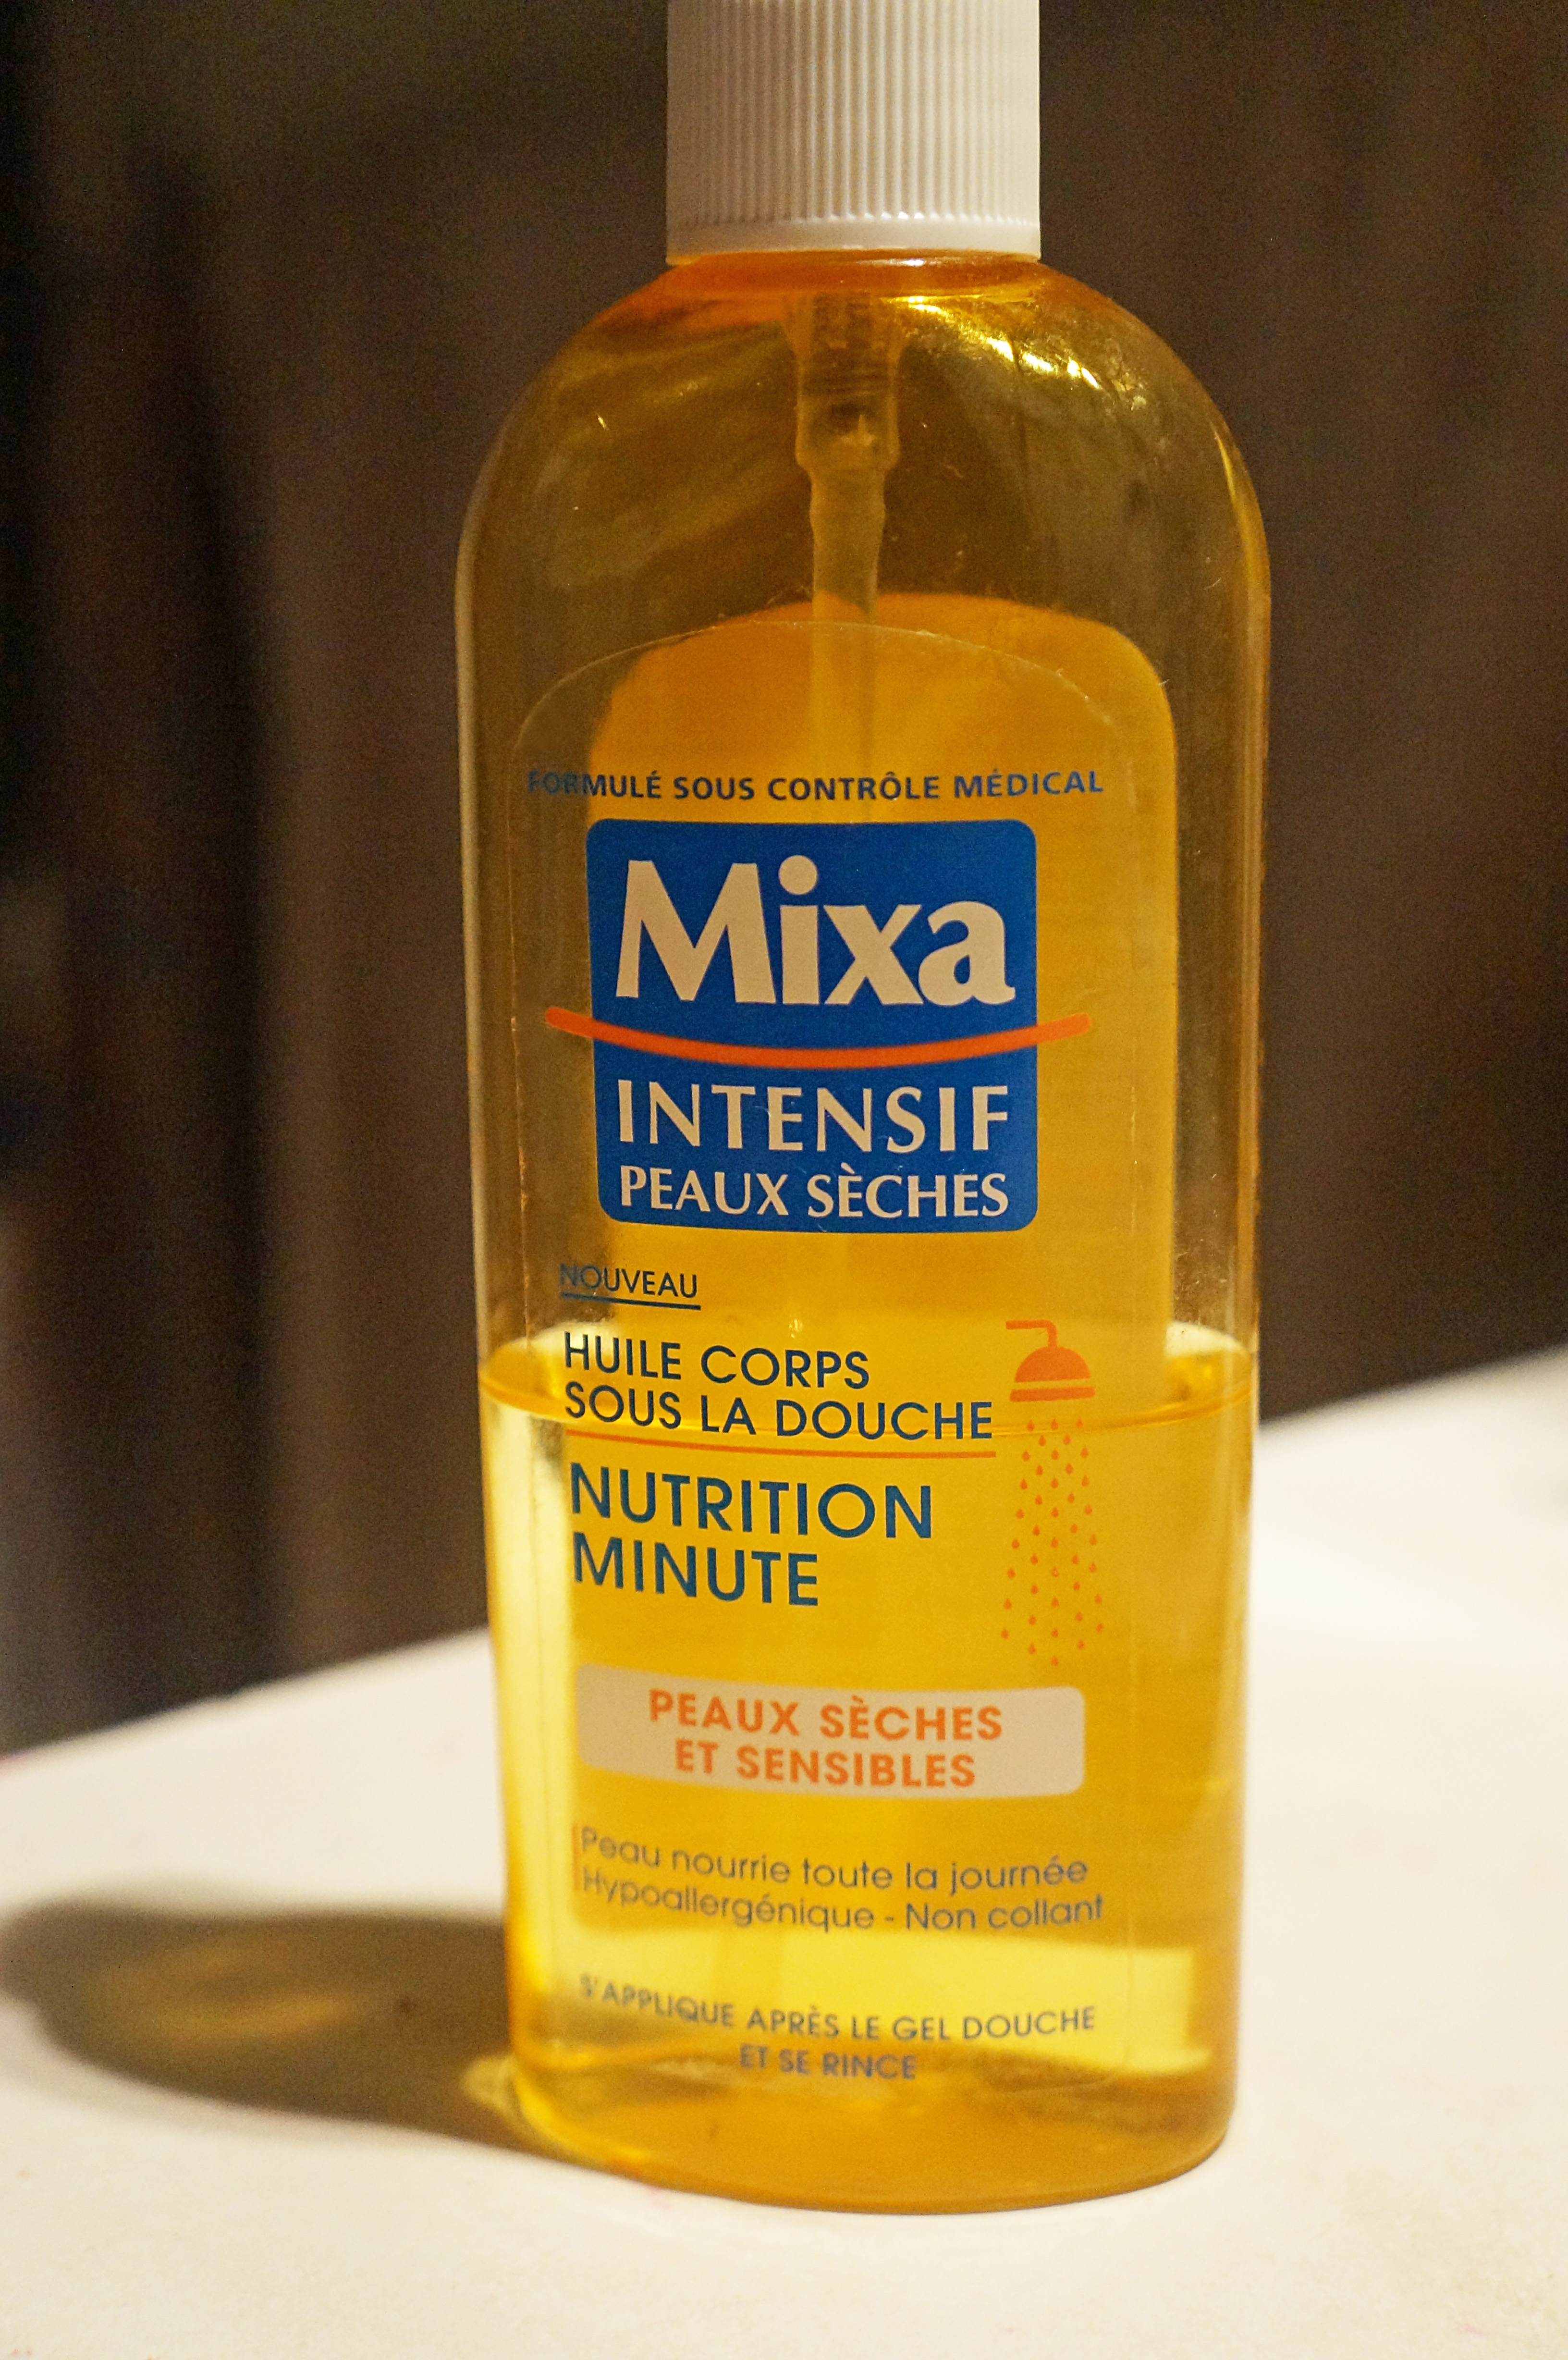 Huile Corps sous la douche Nutrition Minute de Mixa : j'aime !